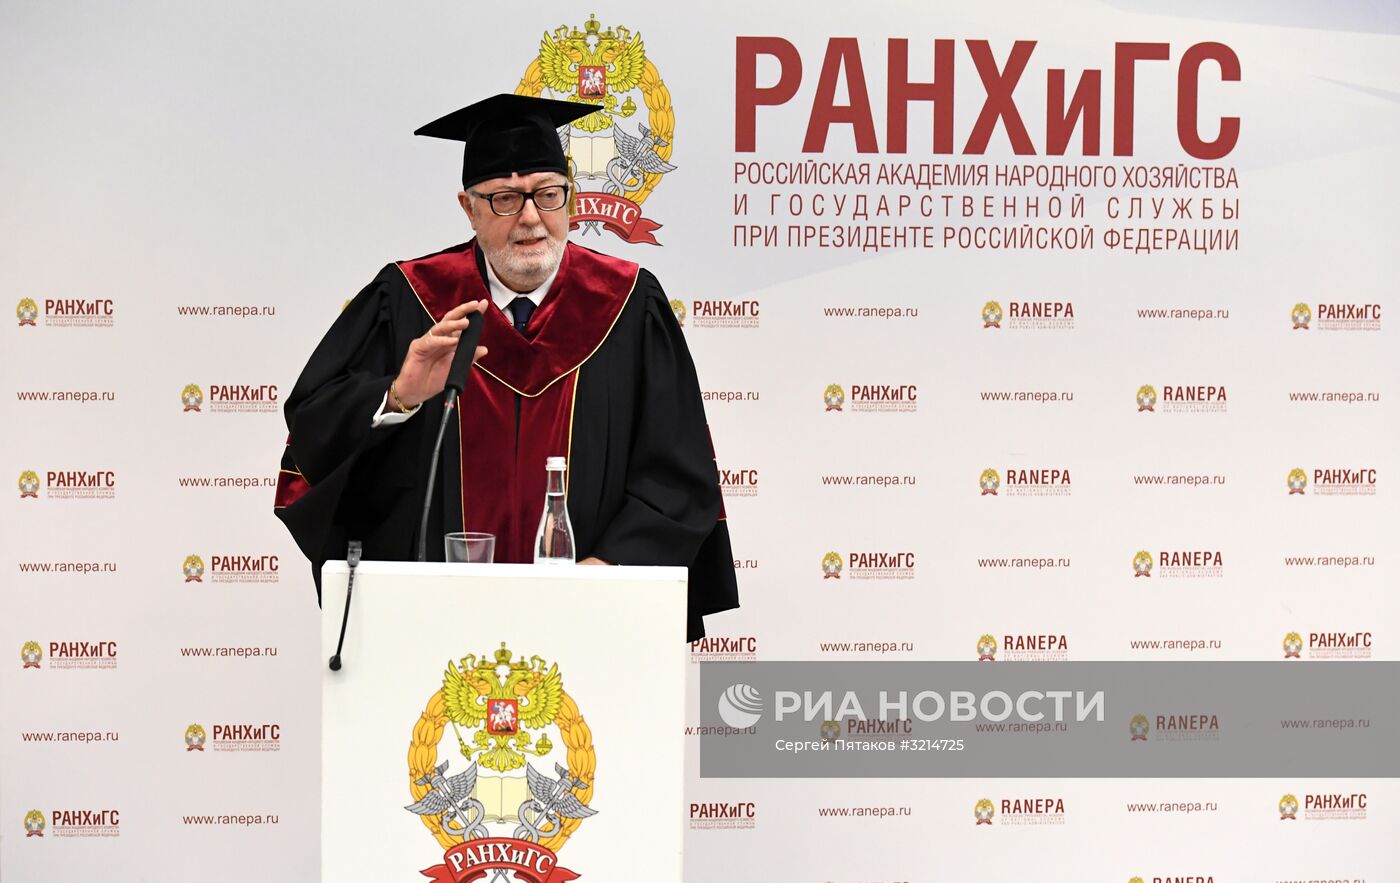 Присвоение звания "Почетный доктор РАНХиГС" экс-председателю ПАСЕ П. Аграмунту